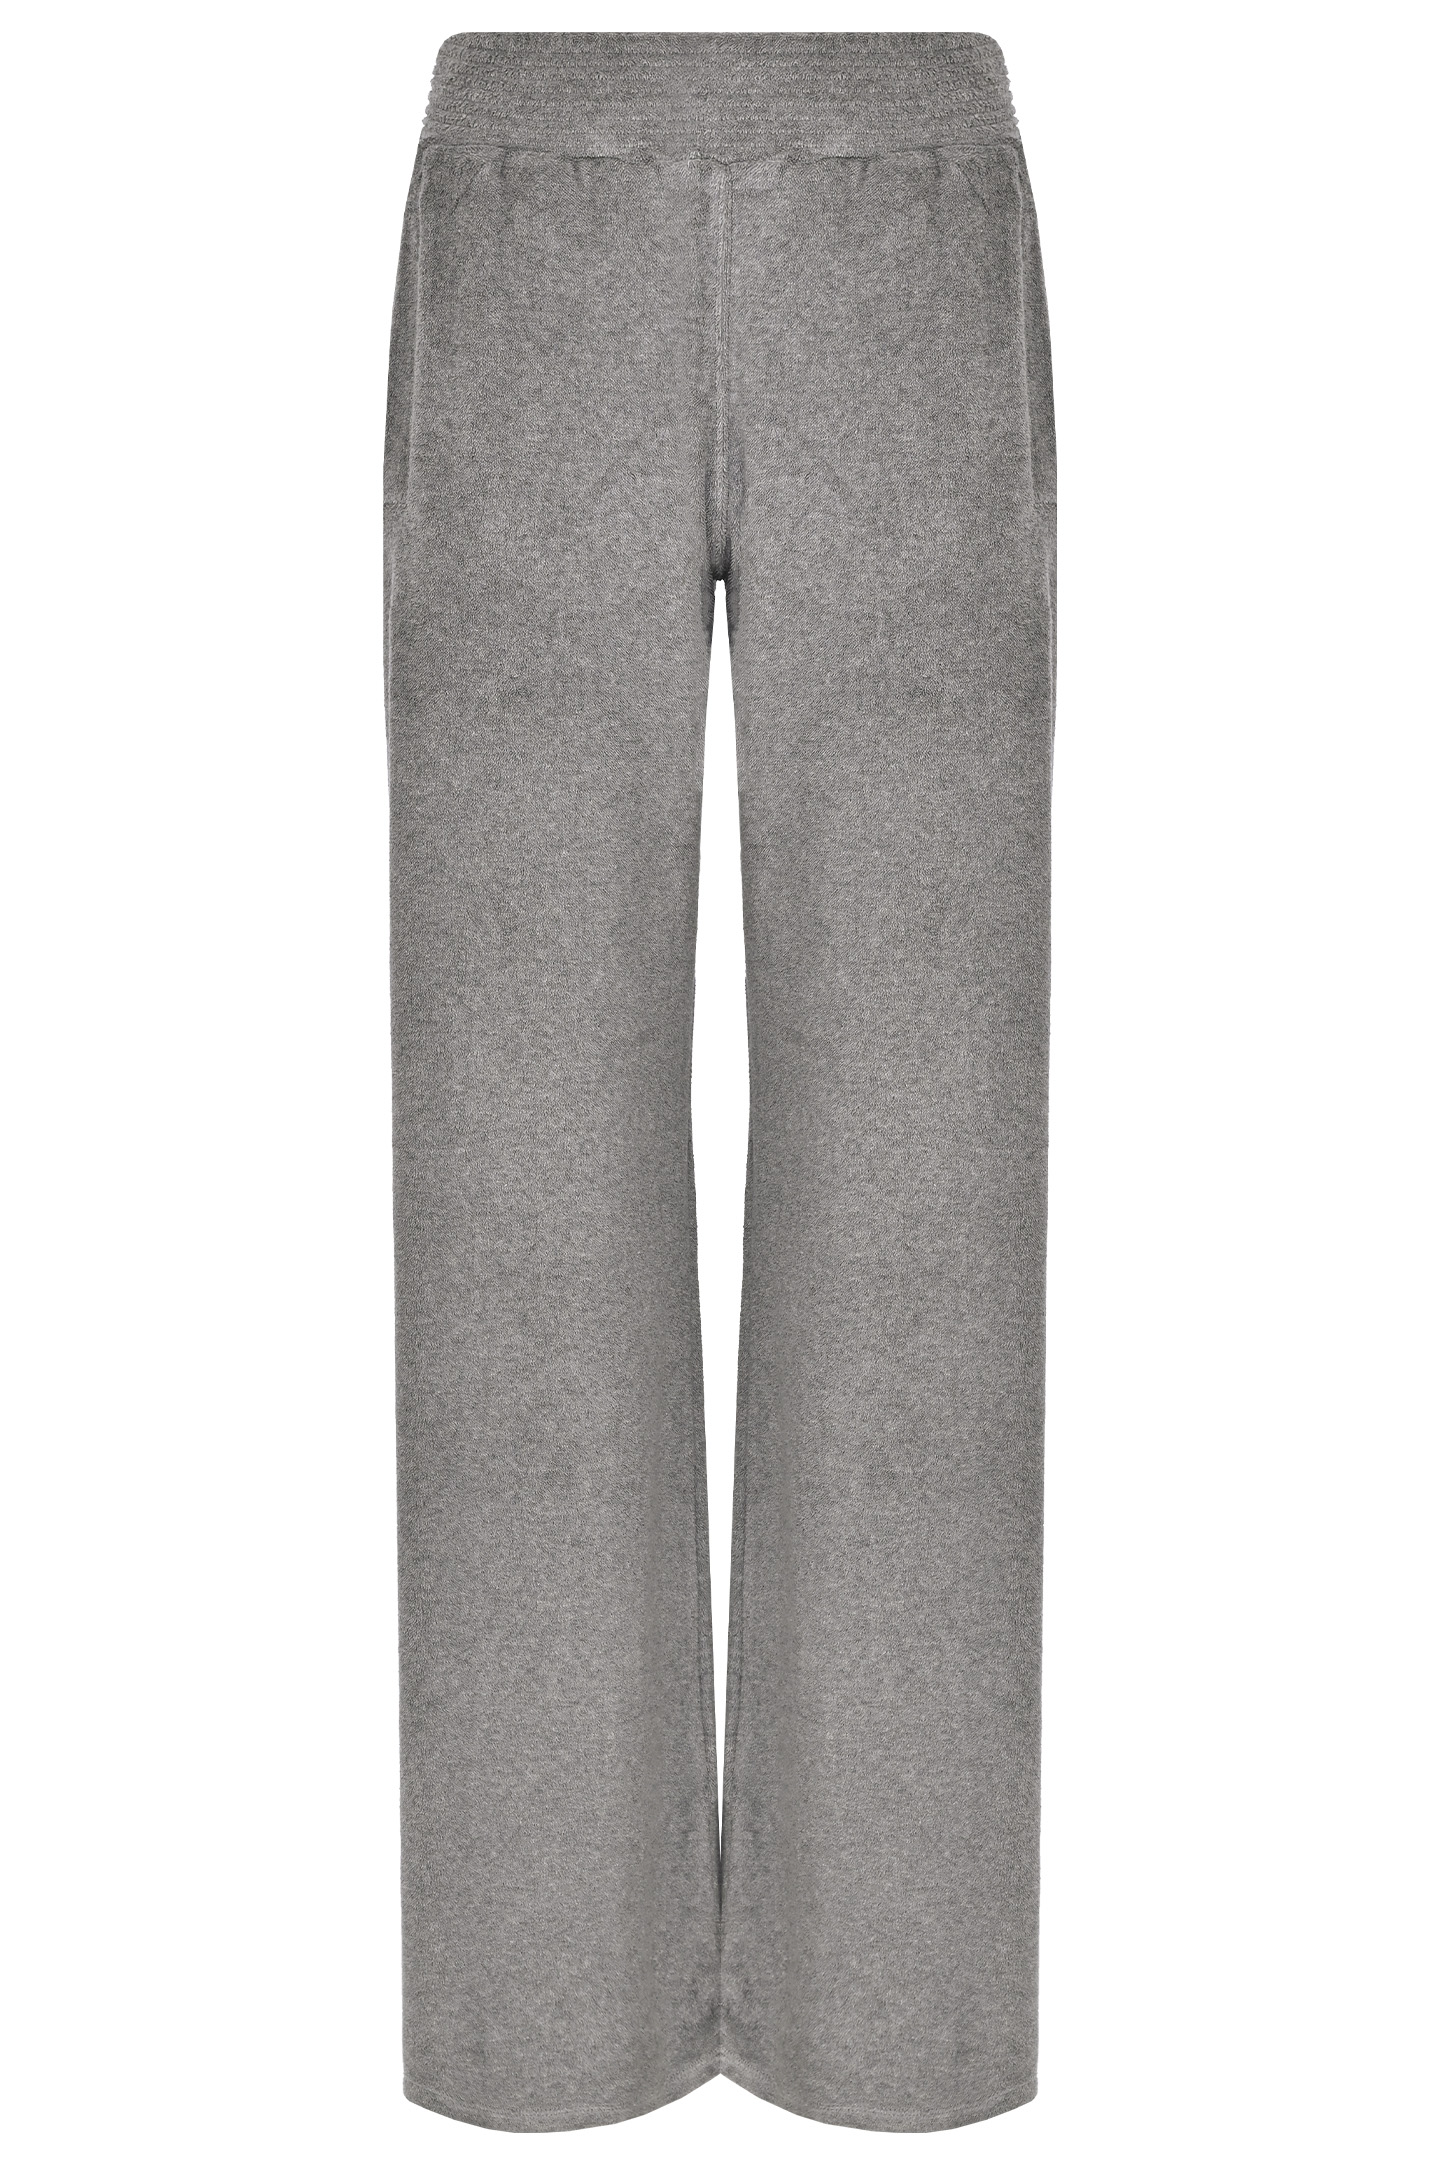 Спортивные широкие брюки JACOB LEE WJP9625, цвет: Серый, Женский